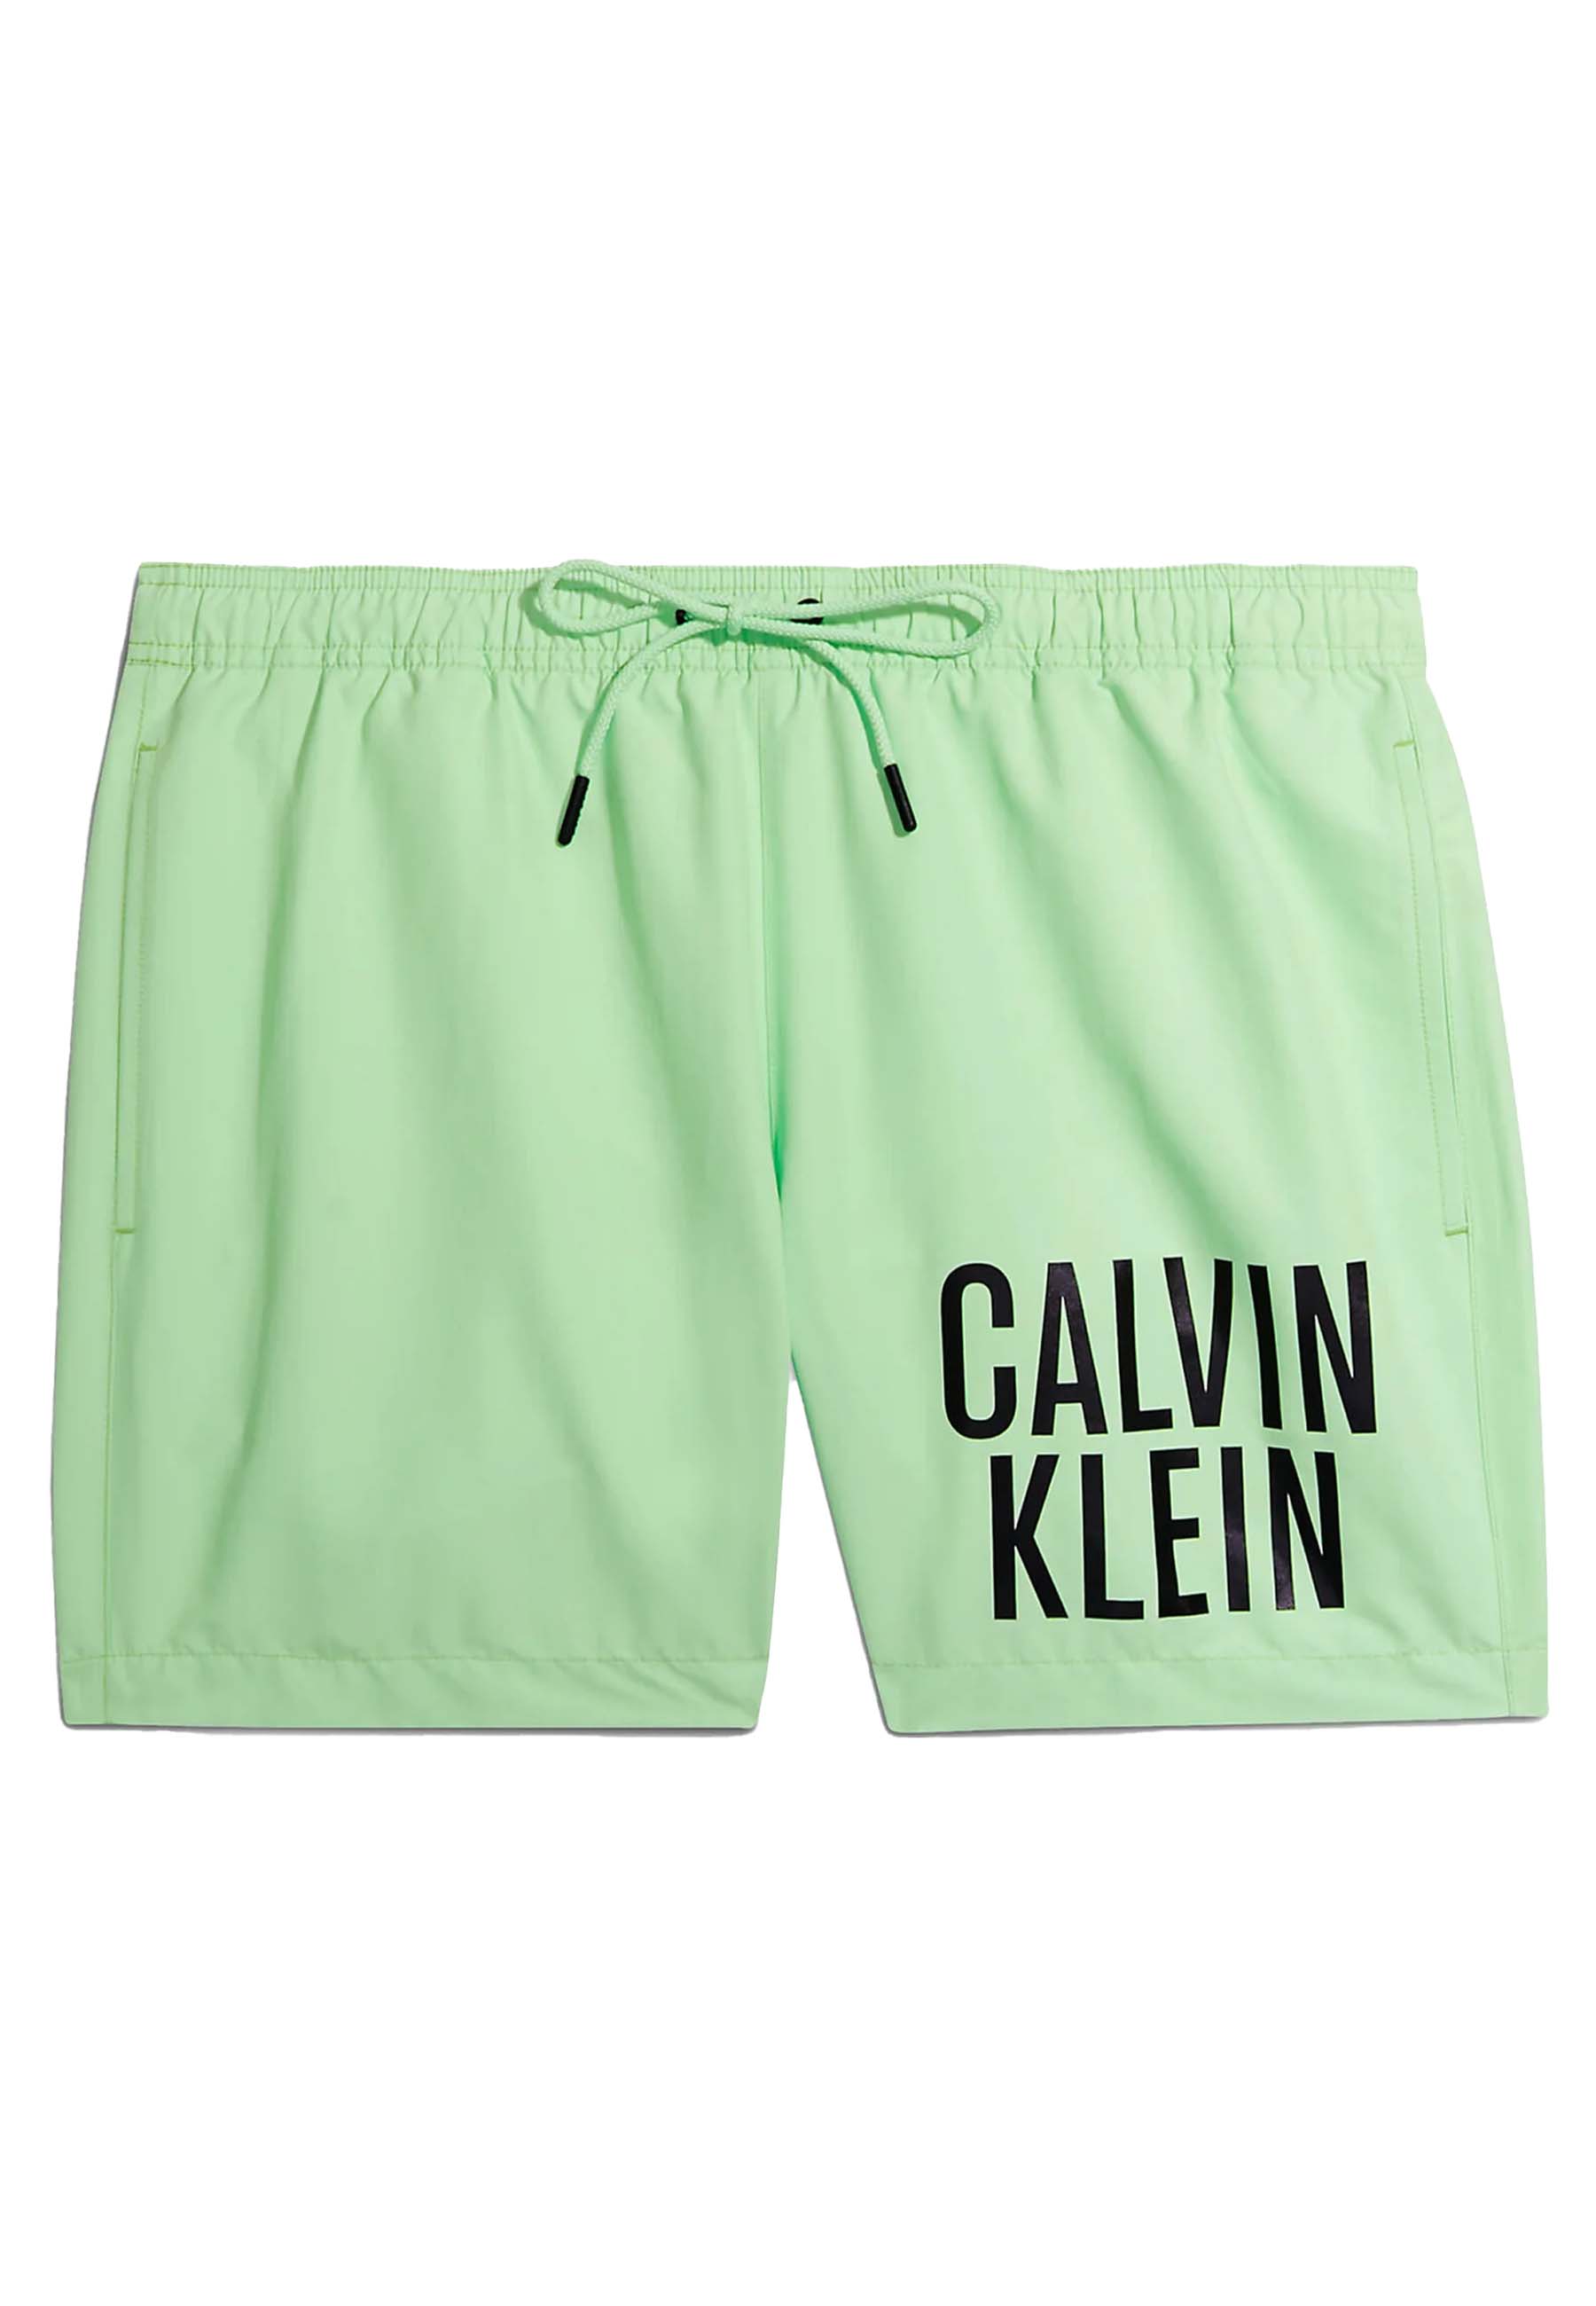 Calvin Klein Medium drawstring zwembroeken groen Heren maat S